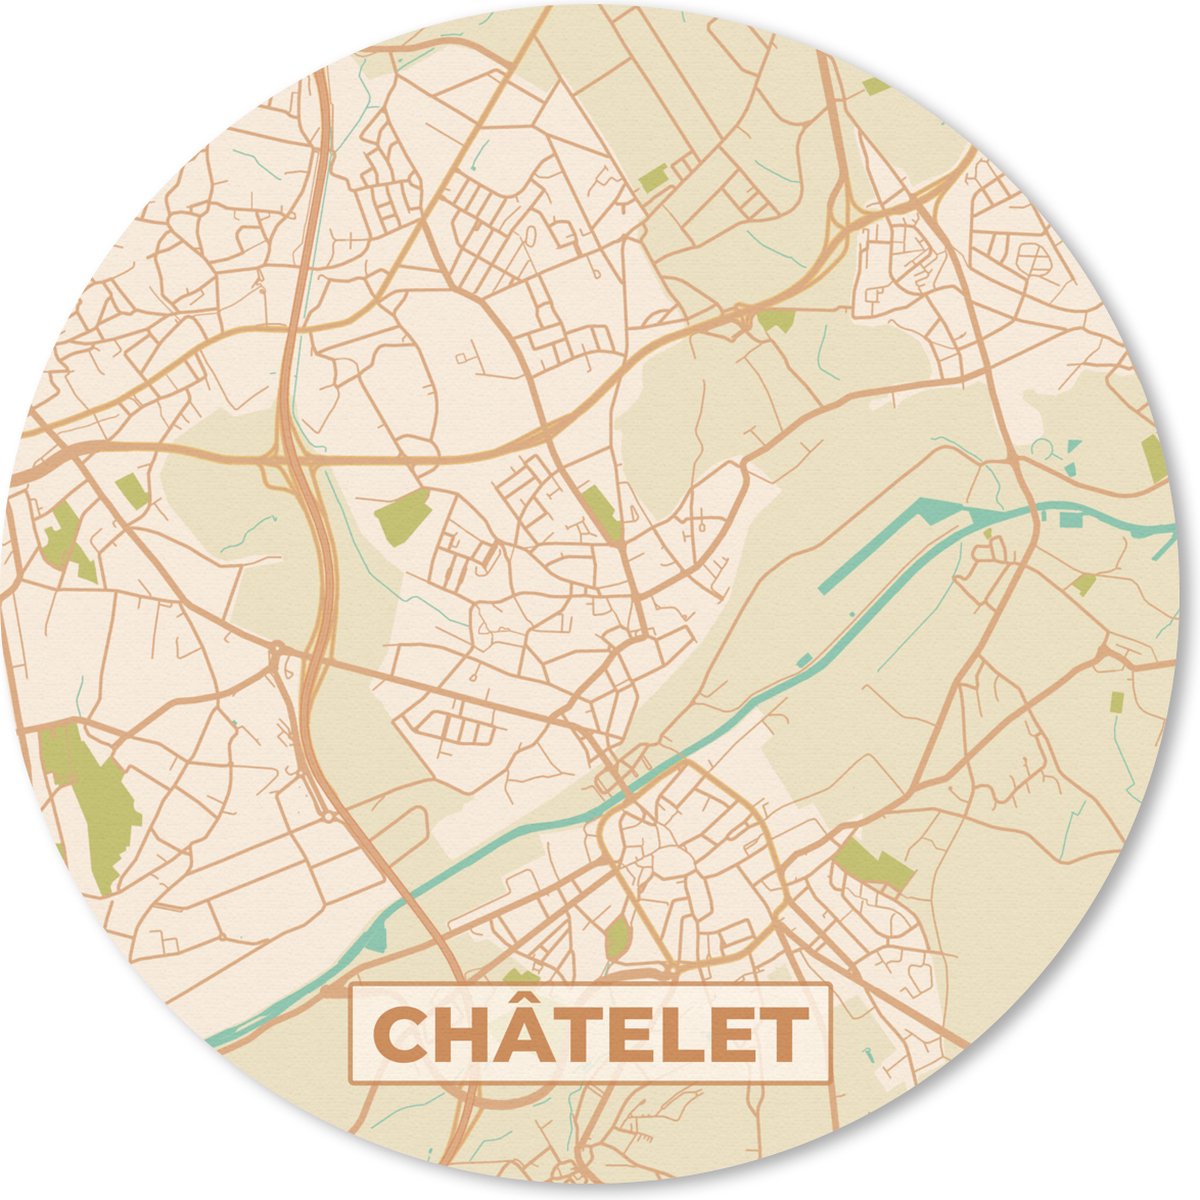 Muismat - Mousepad - Rond - Plattegrond - Kaart - België - Châtelet - Stadskaart - 20x20 cm - Ronde muismat